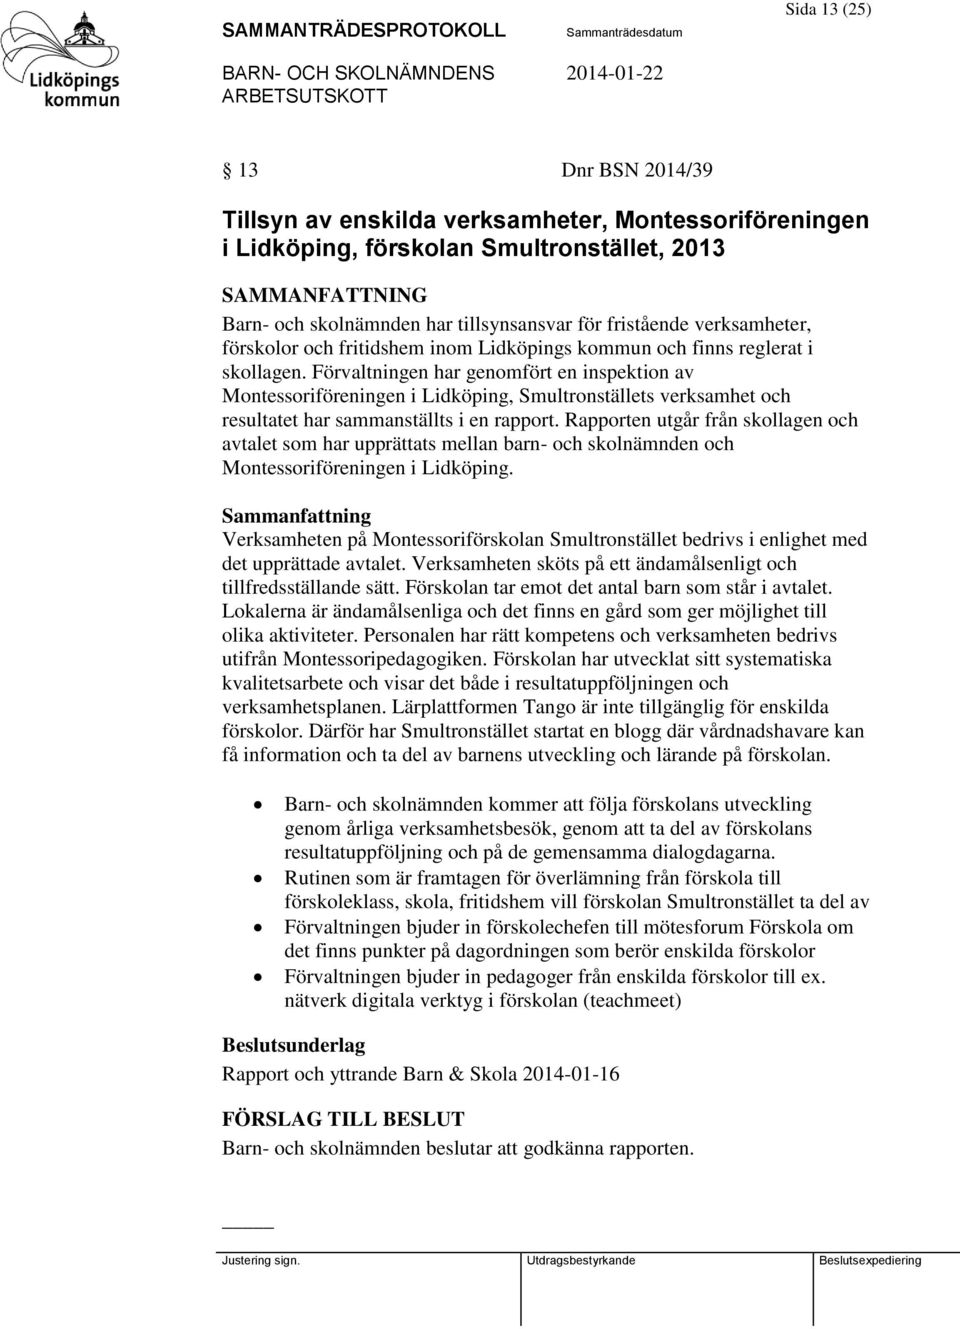 Förvaltningen har genomfört en inspektion av Montessoriföreningen i Lidköping, Smultronställets verksamhet och resultatet har sammanställts i en rapport.